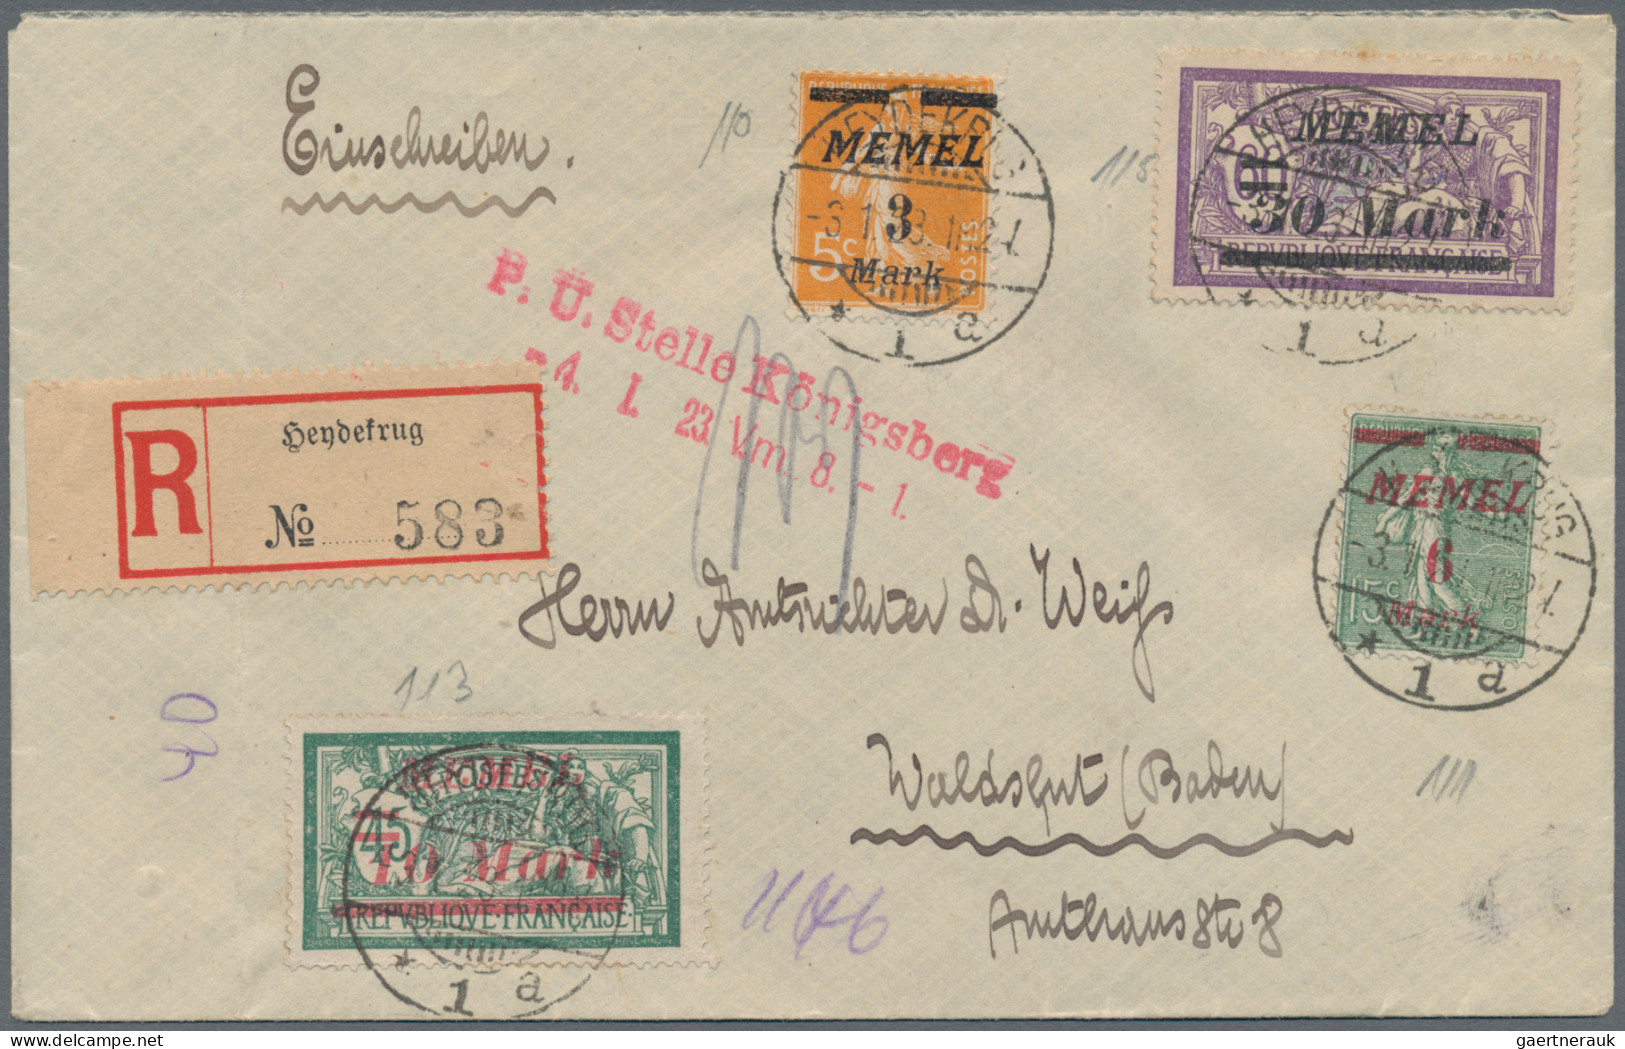 Memel: 1921/1925 (ca): Konvolut von 143 Belegen mit Wert-, Luftpost-, Einschreib